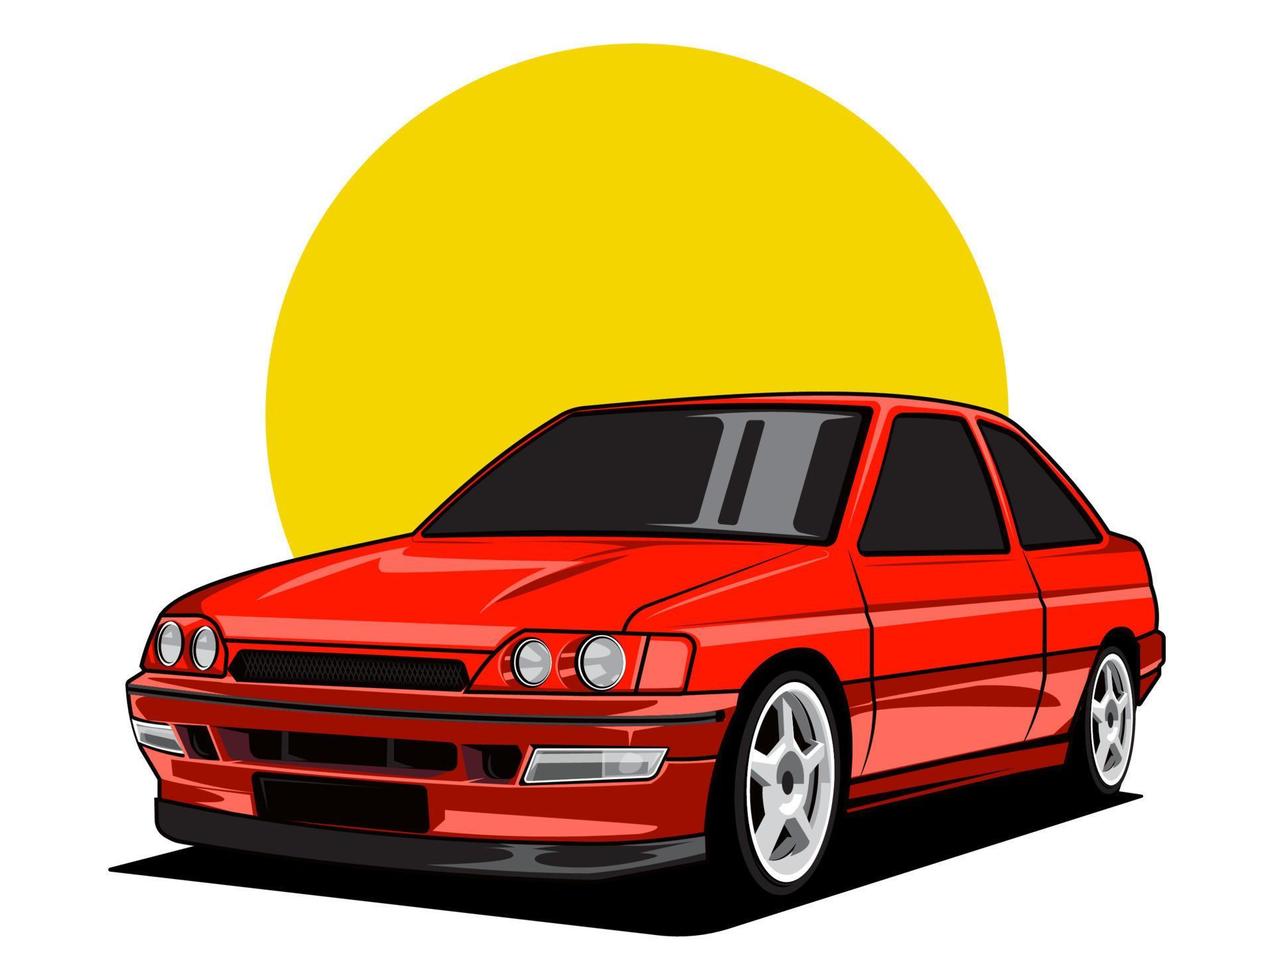 90s auto vervaardiging in rood accent voor voertuig vector illustratie ontwerp grafisch